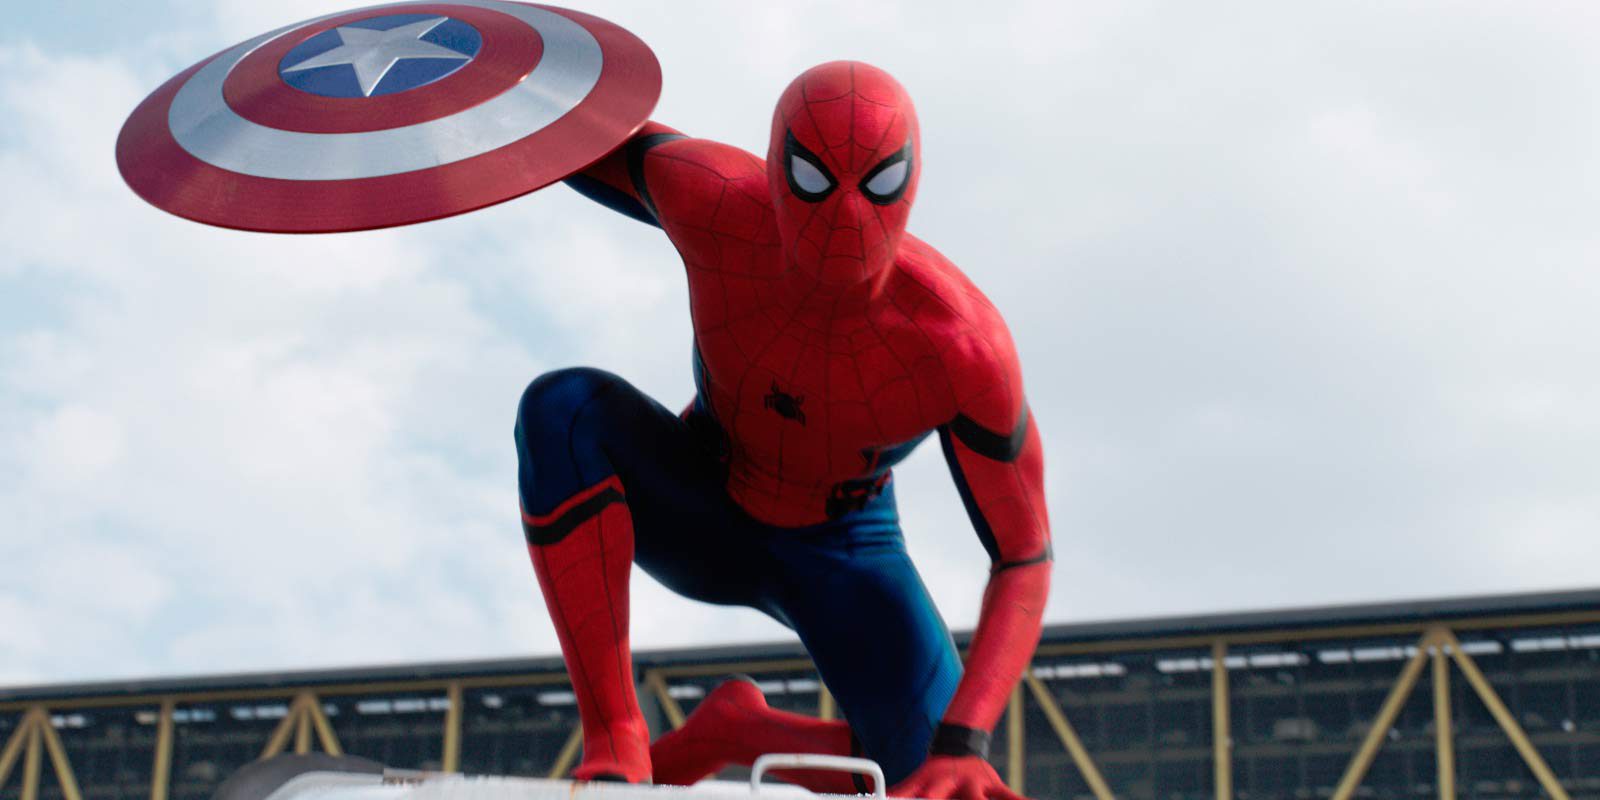 Spider-Man tendrá alas planeadoras en 'Spider-Man: Homecoming'